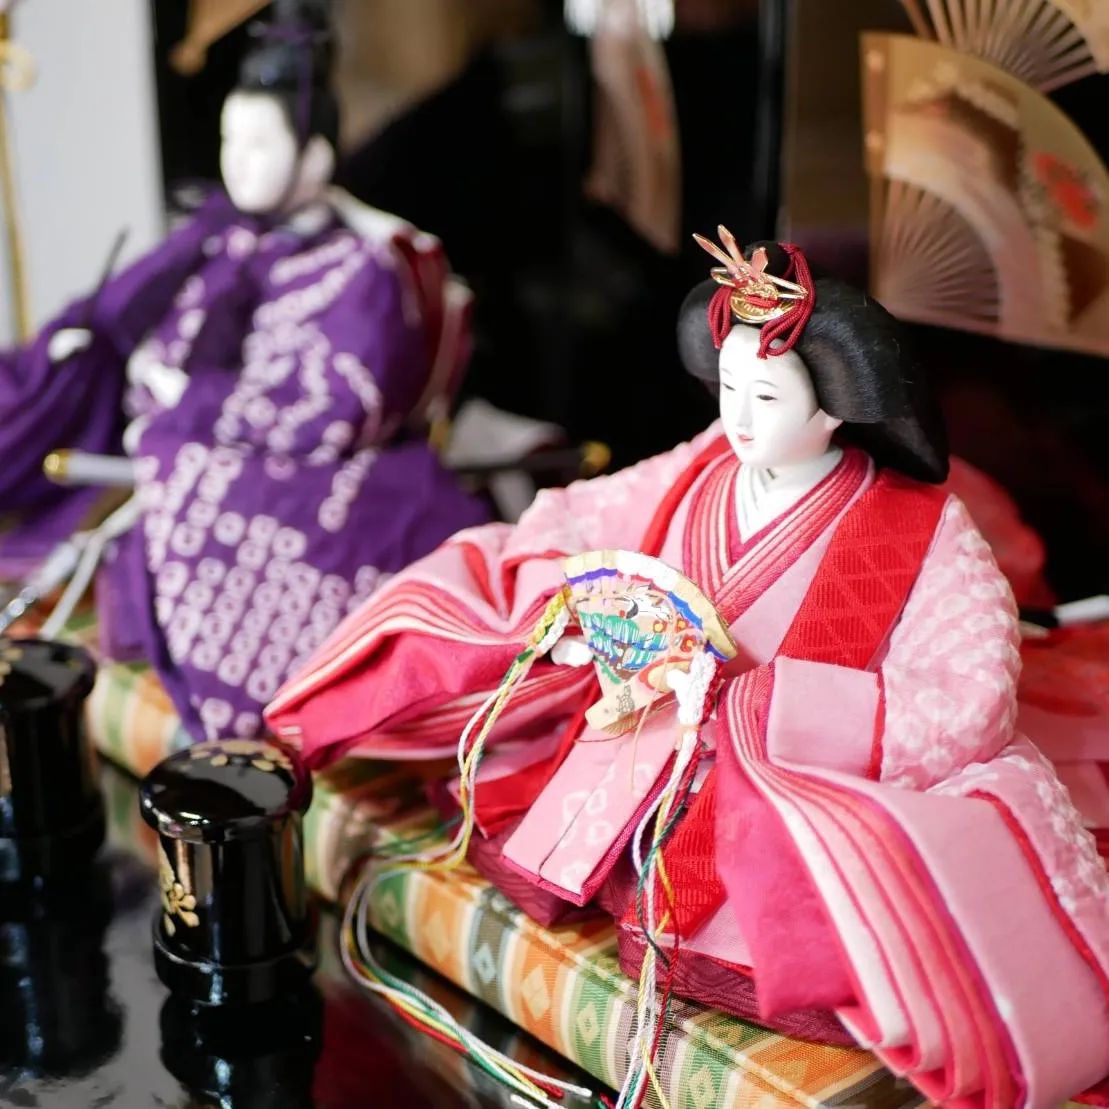 愛知県名古屋市有松の町並みで、あおう人形のお雛さまに出会えます- from Instagram